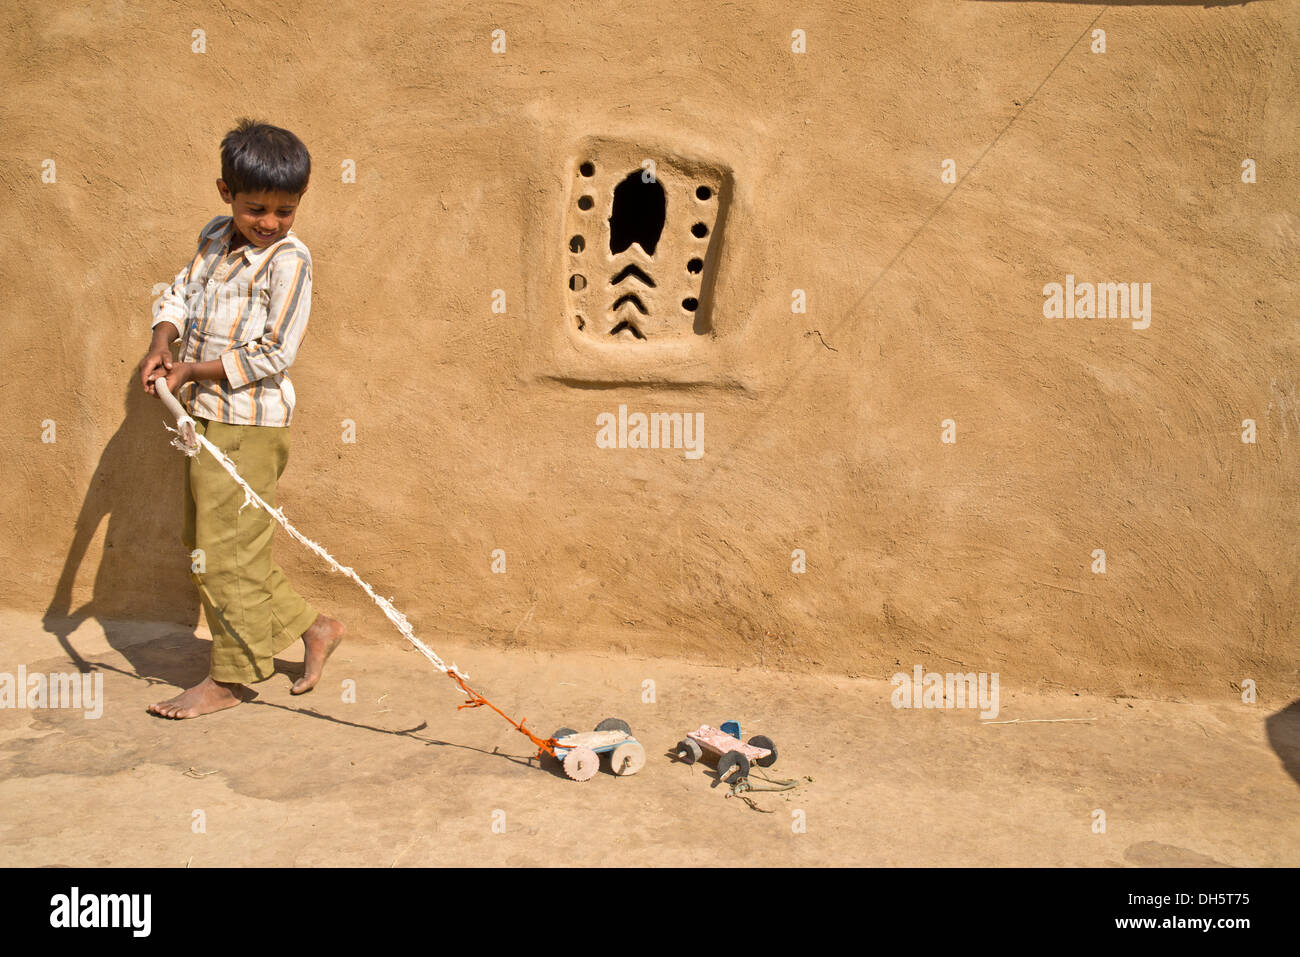 Un niño que jugaba con los coches de juguete casero fuera de una casa de barro, Wüste Thar, Rajasthan, India Foto de stock